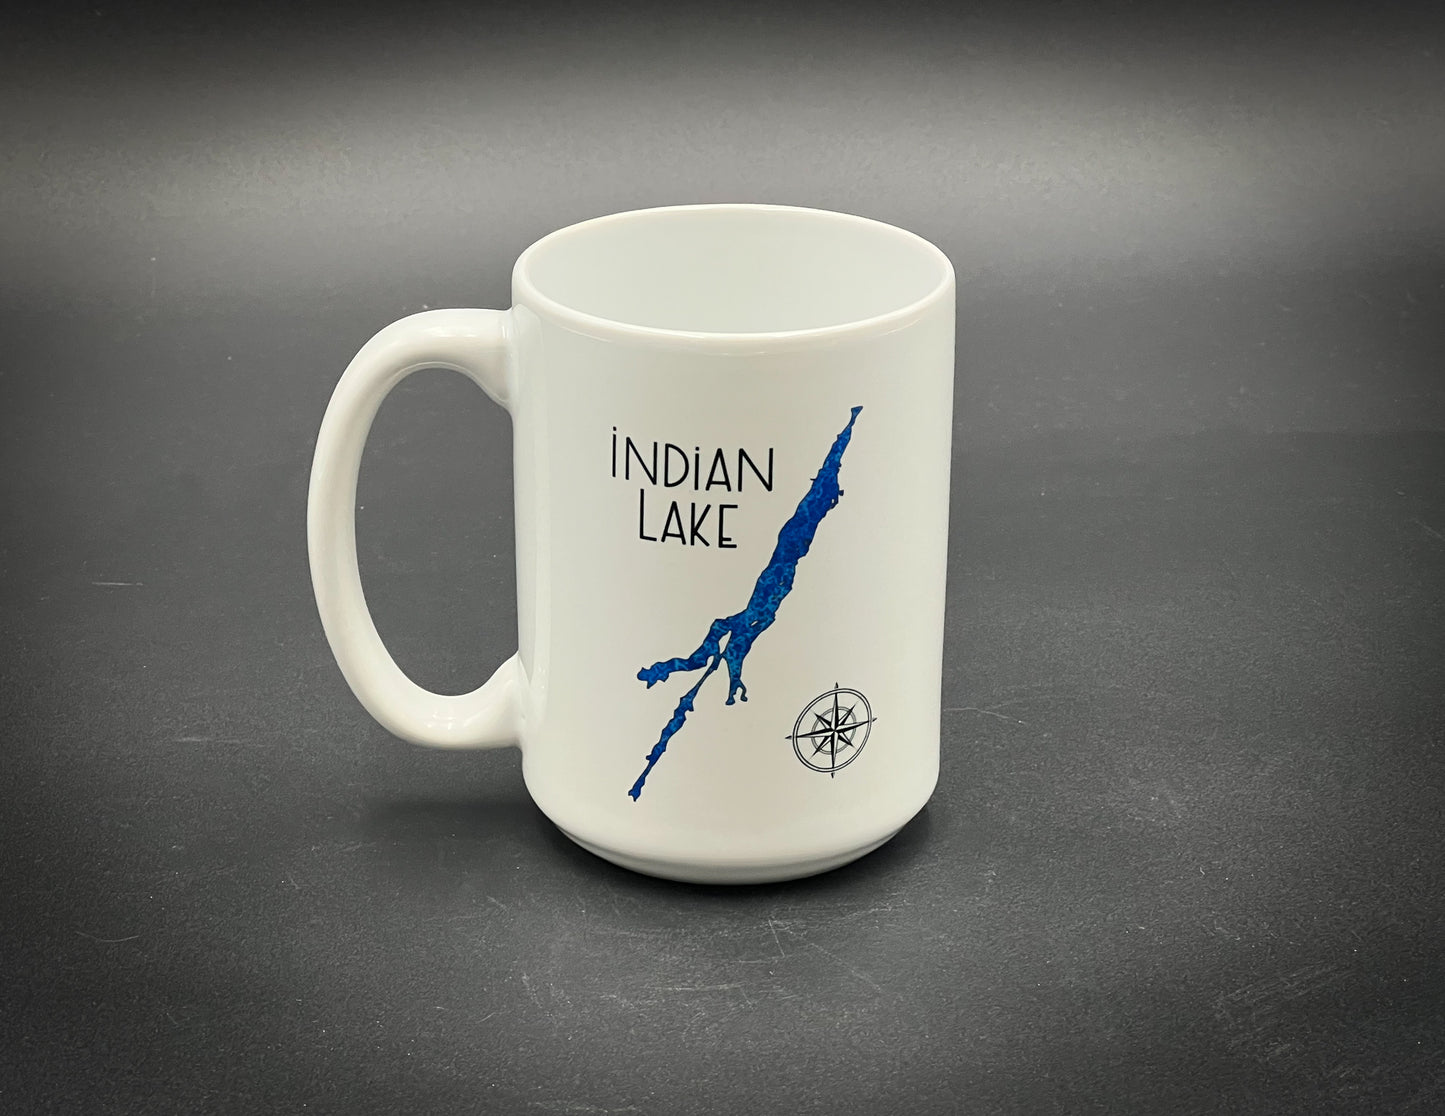 Indian Lake - 15 oz Ceramic Mug